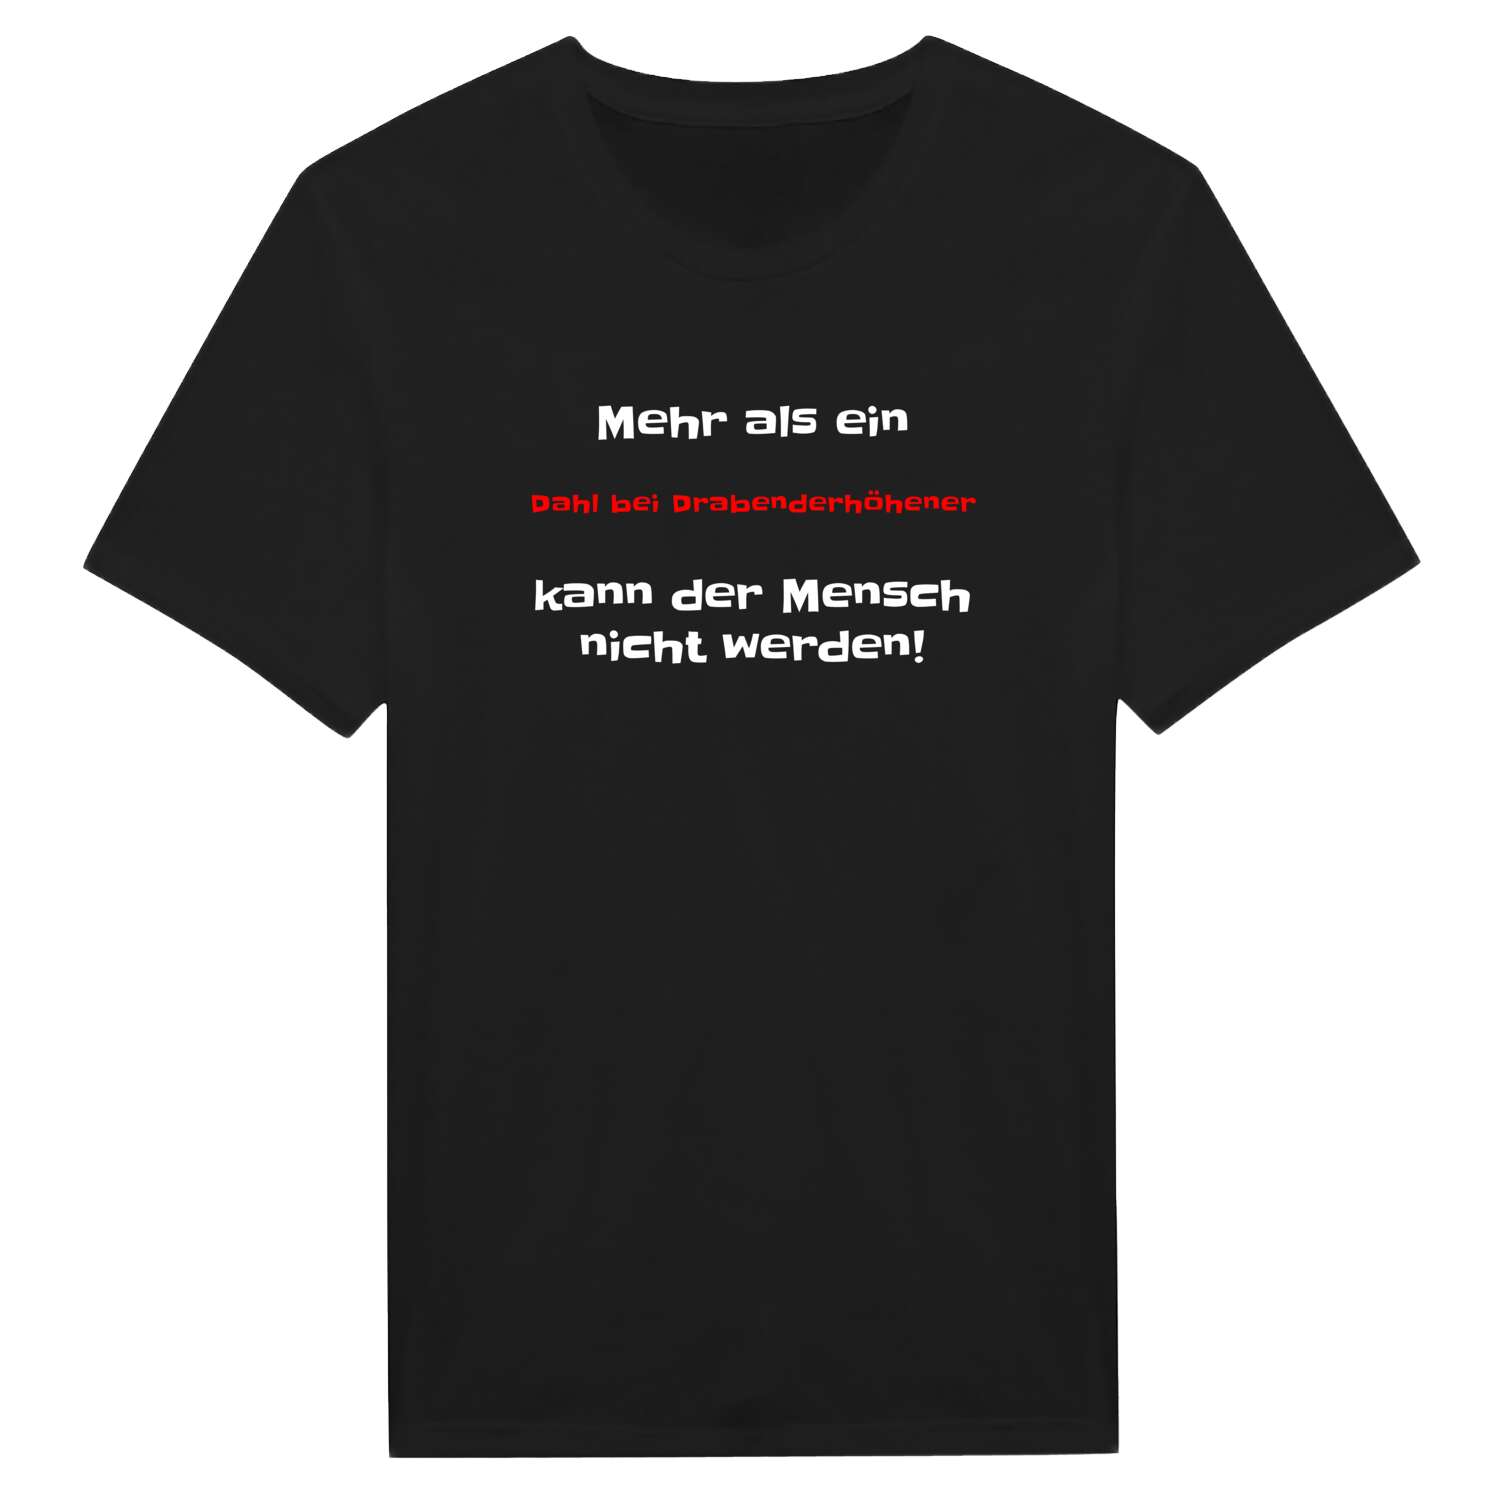 Dahl bei Drabenderhöhe T-Shirt »Mehr als ein«